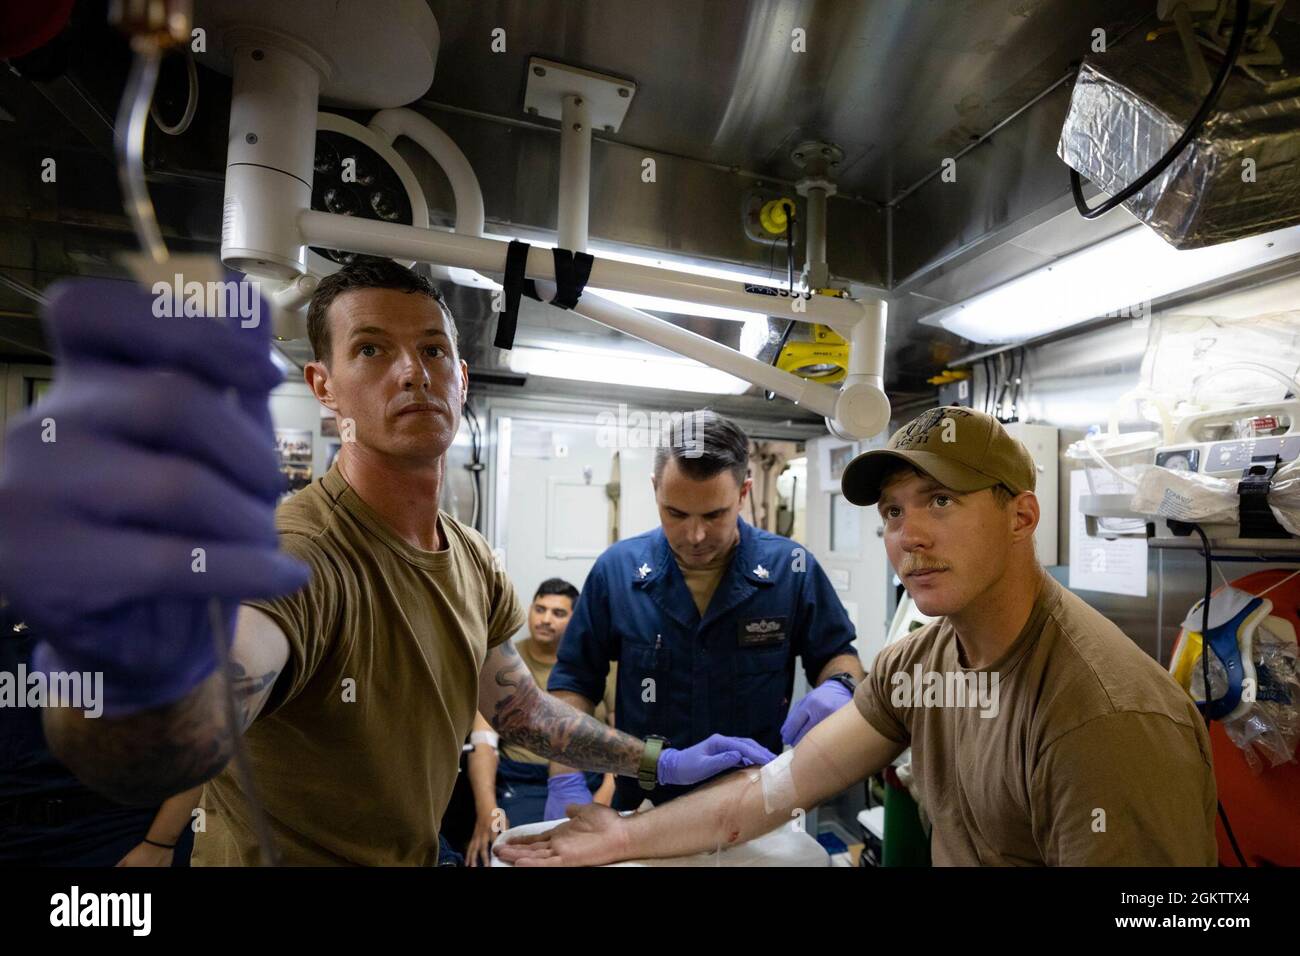 210701-N-RL695-1195 MER DES CARAÏBES - (1 JUILLET 2021) -- Hôpital Corpsman 1re classe Franklin McCullough, centre, affecté au navire de combat littoral Freedom-variant USS Sioux City (LCS 11), dirige la formation des membres de l’équipe d’intervention d’urgence (EMERT), avec le compagnon de Boatswain 2e classe Kevin Wix, à gauche, et le compagnon de Gunner 1re classe Benjamin Parrish, dans la salle de traitement médical, le 1er juillet 2021. Sioux City est déployée dans la zone d’opérations de la 4e flotte des États-Unis pour appuyer la mission de la Force opérationnelle interagences conjointe Sud, qui comprend des missions de lutte contre le trafic illicite de drogues dans les Caraïbes et dans le Pacifique oriental Banque D'Images